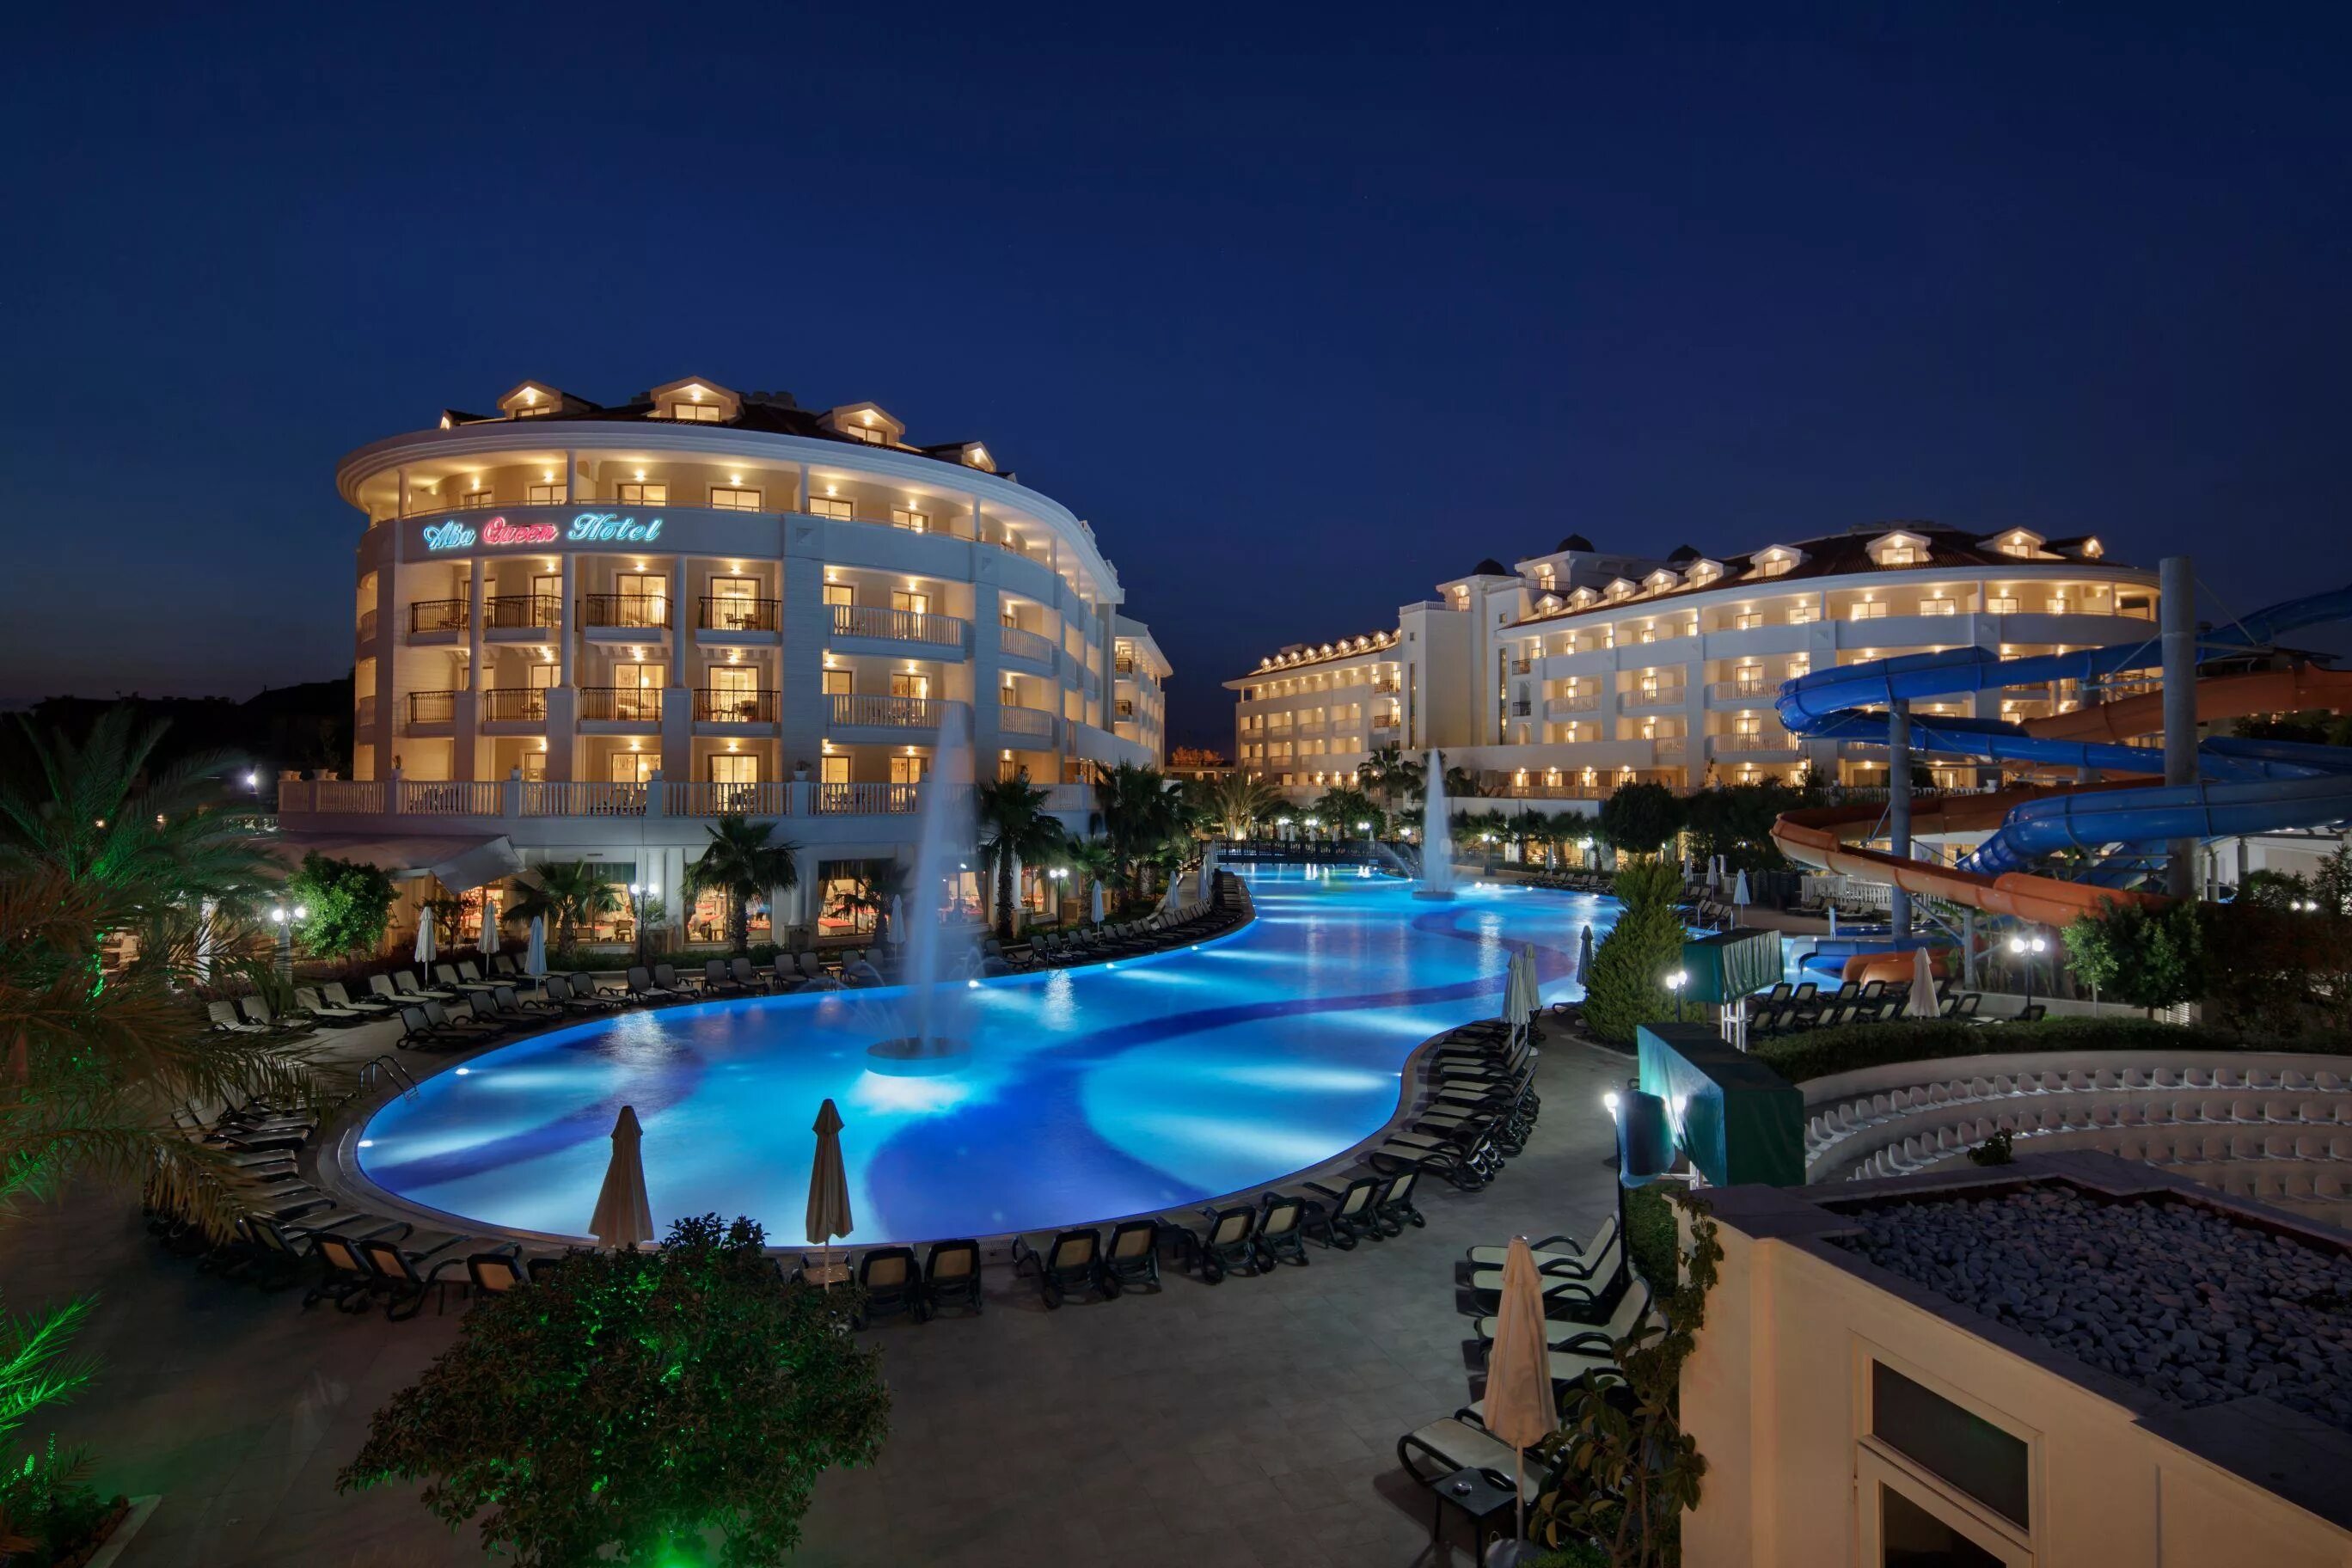 Alba Queen Hotel 5 Турция. Отель Алба Квин в Сиде Турция. Сиде ночью